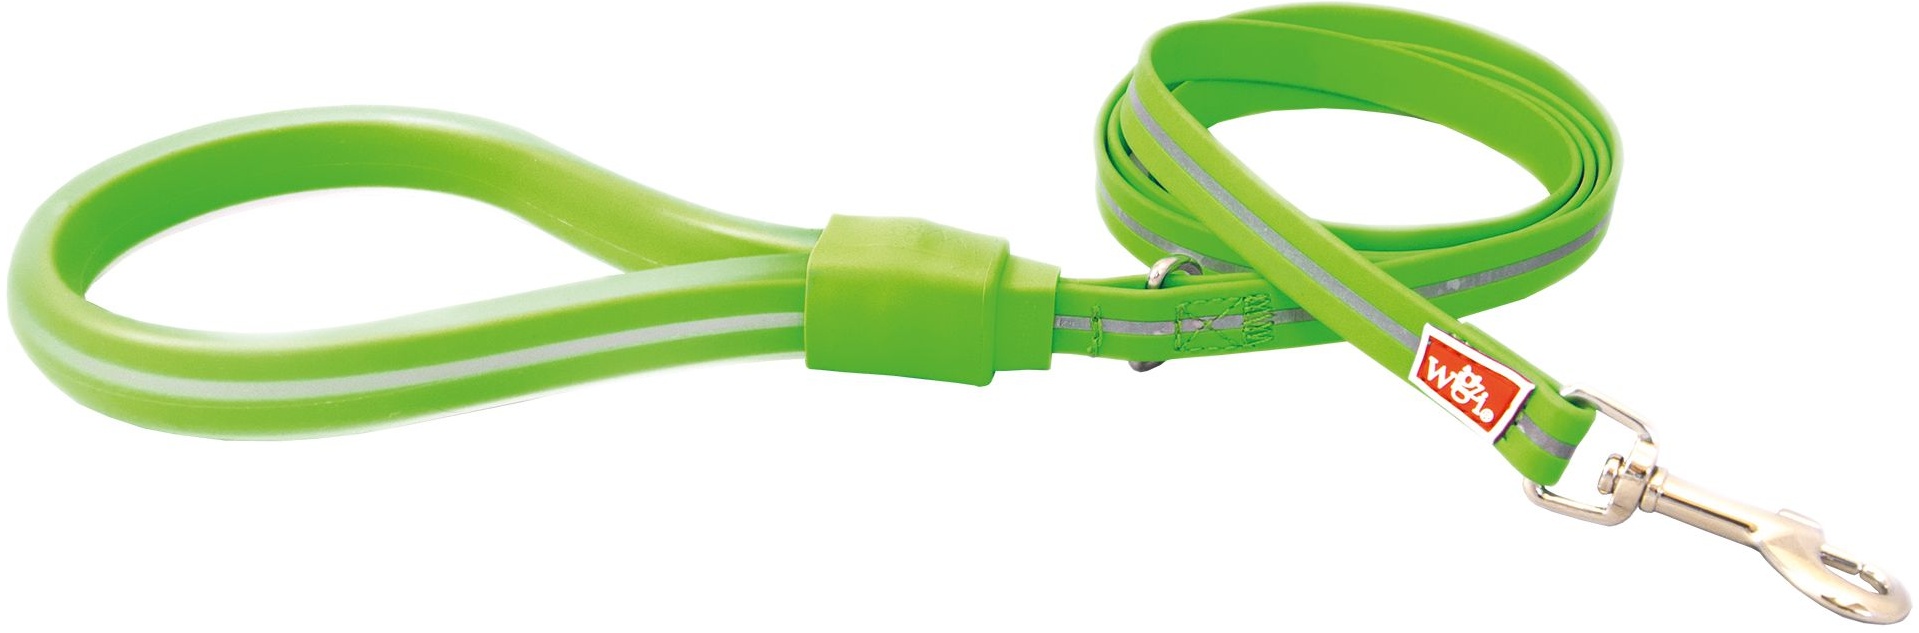 Wigzi Leine Neon Grün180 cm lang in Neonfarben mit Reflexstreifen pflegeleicht 1 St